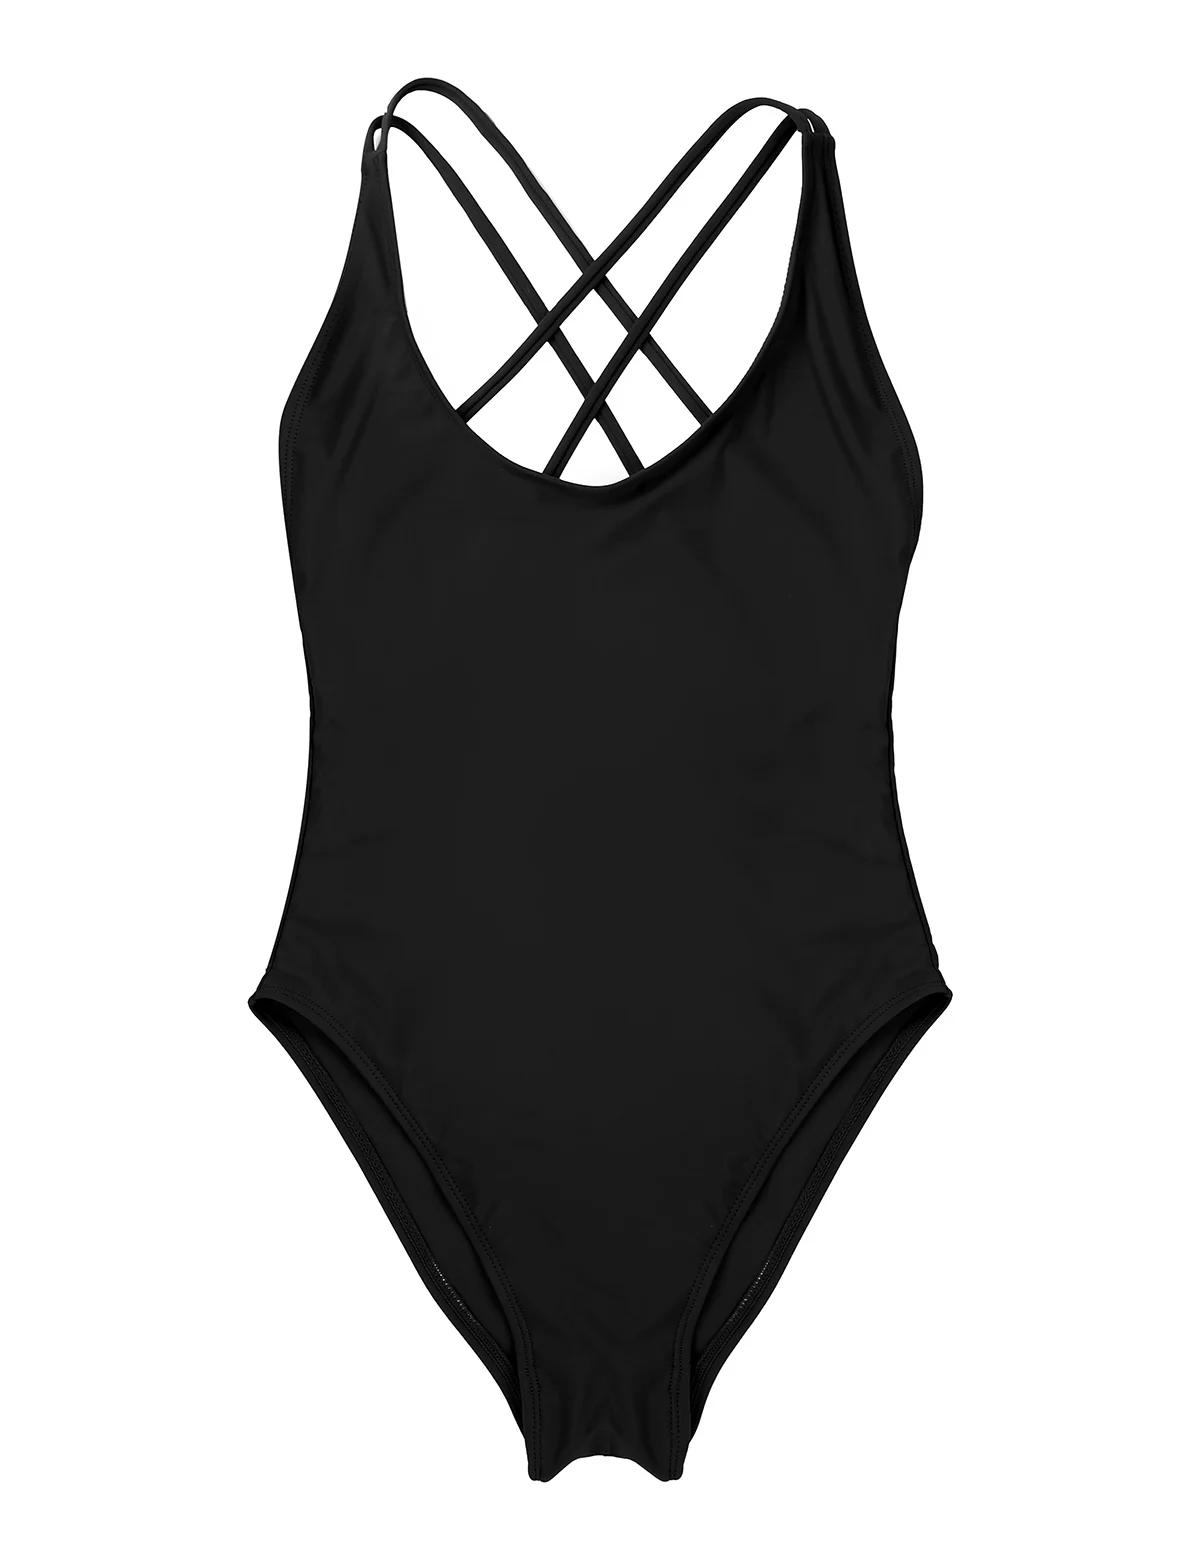 Женский сдельный глубокий u-образный вырез крест-накрест на спине, высокий вырез, без подкладки, купальник, купальный костюм, вечерние, пляжная одежда, купальники - Цвет: Black